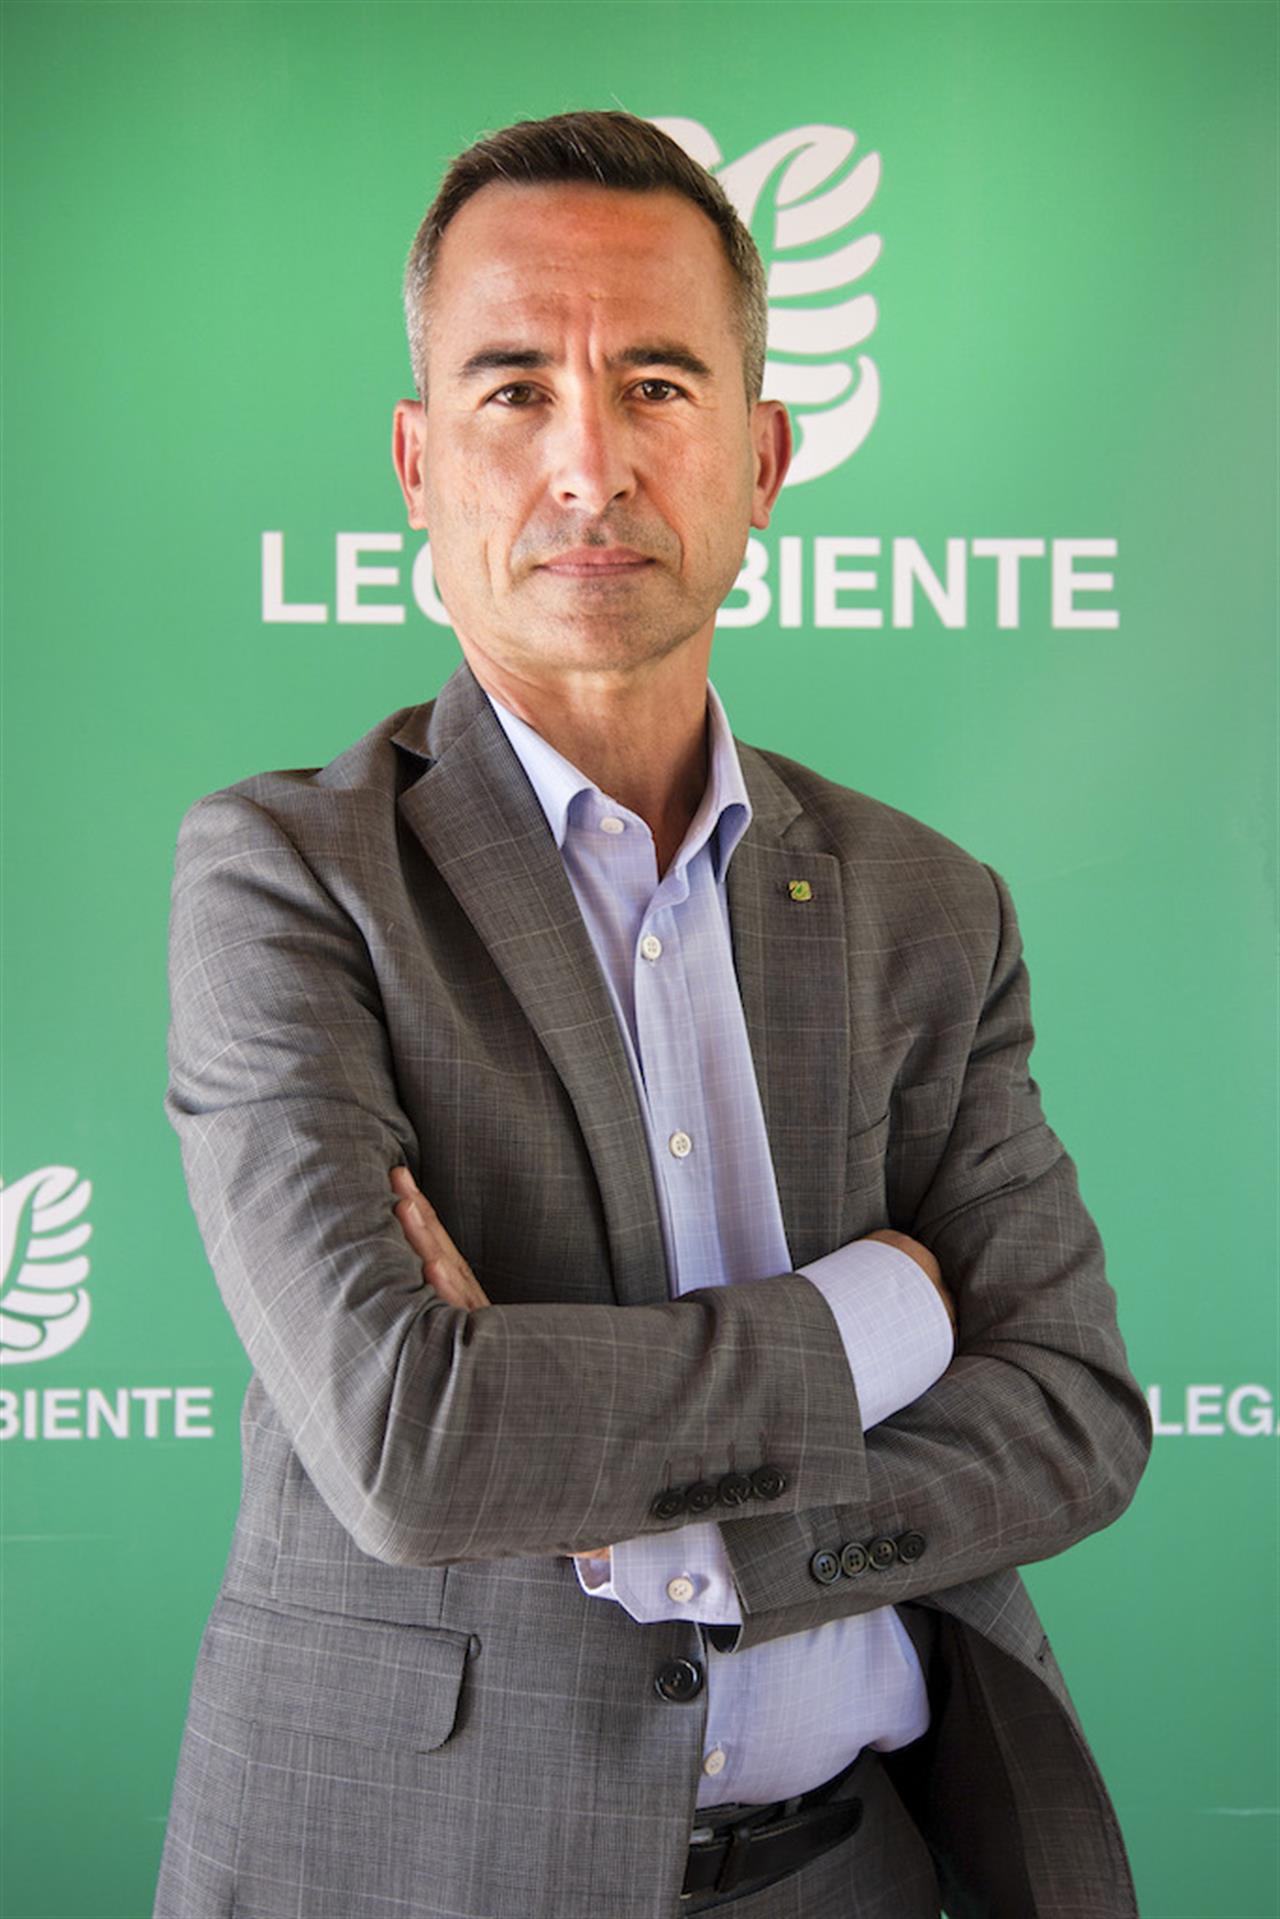 Stefano Ciafani in giacca e camicia, con le braccia incrociate, davanti a uno sfondo verde con la scritta "Legambiente" e il logo 